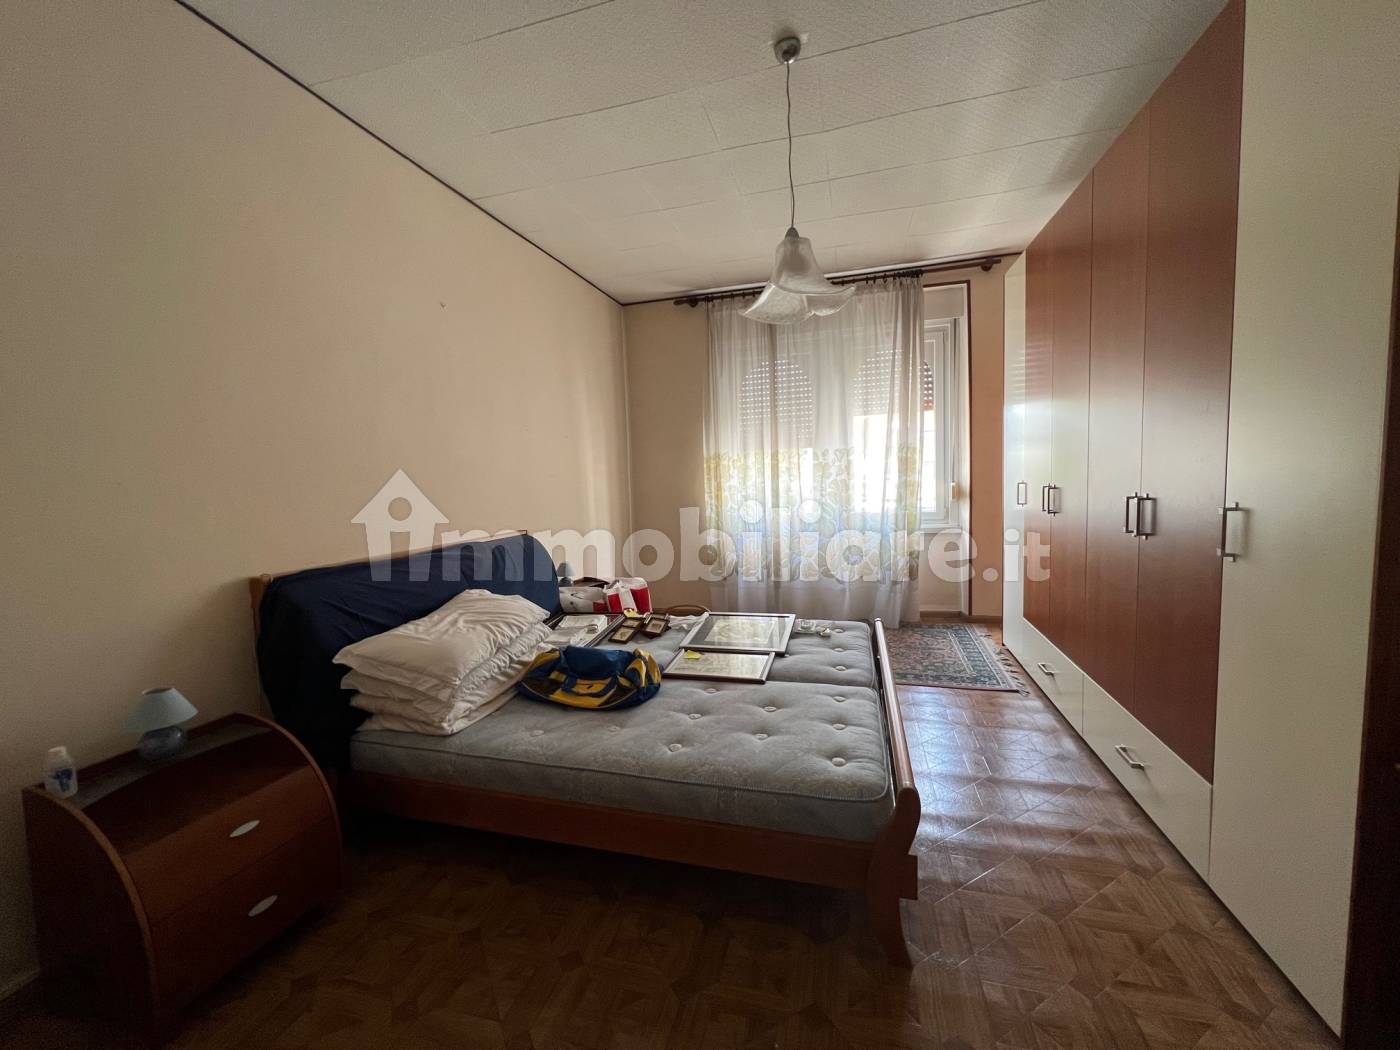 Appartamento In Via Zara A Trento - Elenchi E Prezzi Di Vendita - Waa2